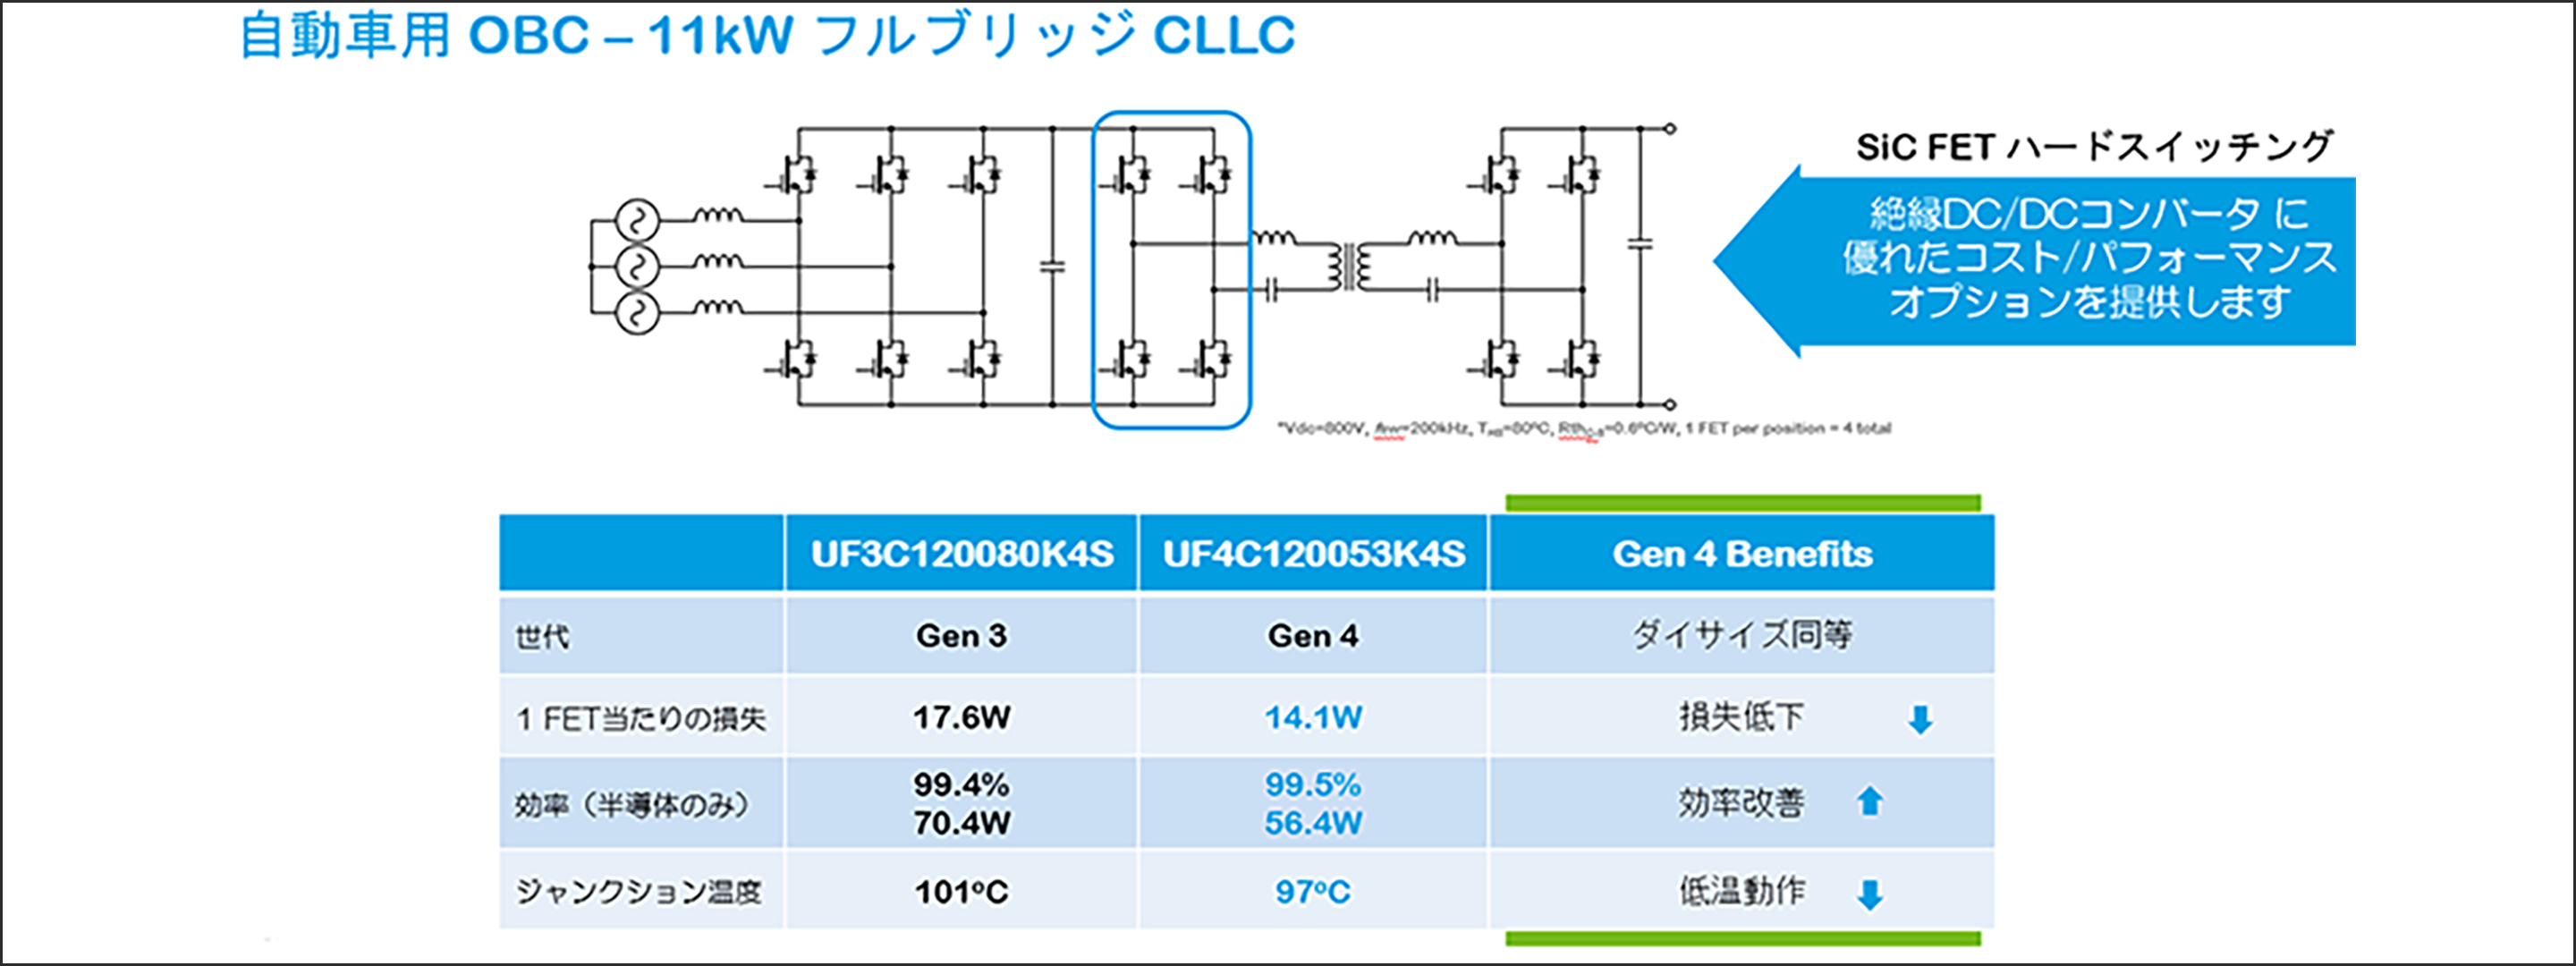 11kW OBCの例 　新しいGen4 UF4C120053K4S SiC FETを使用したフルブリッジCLLC設計